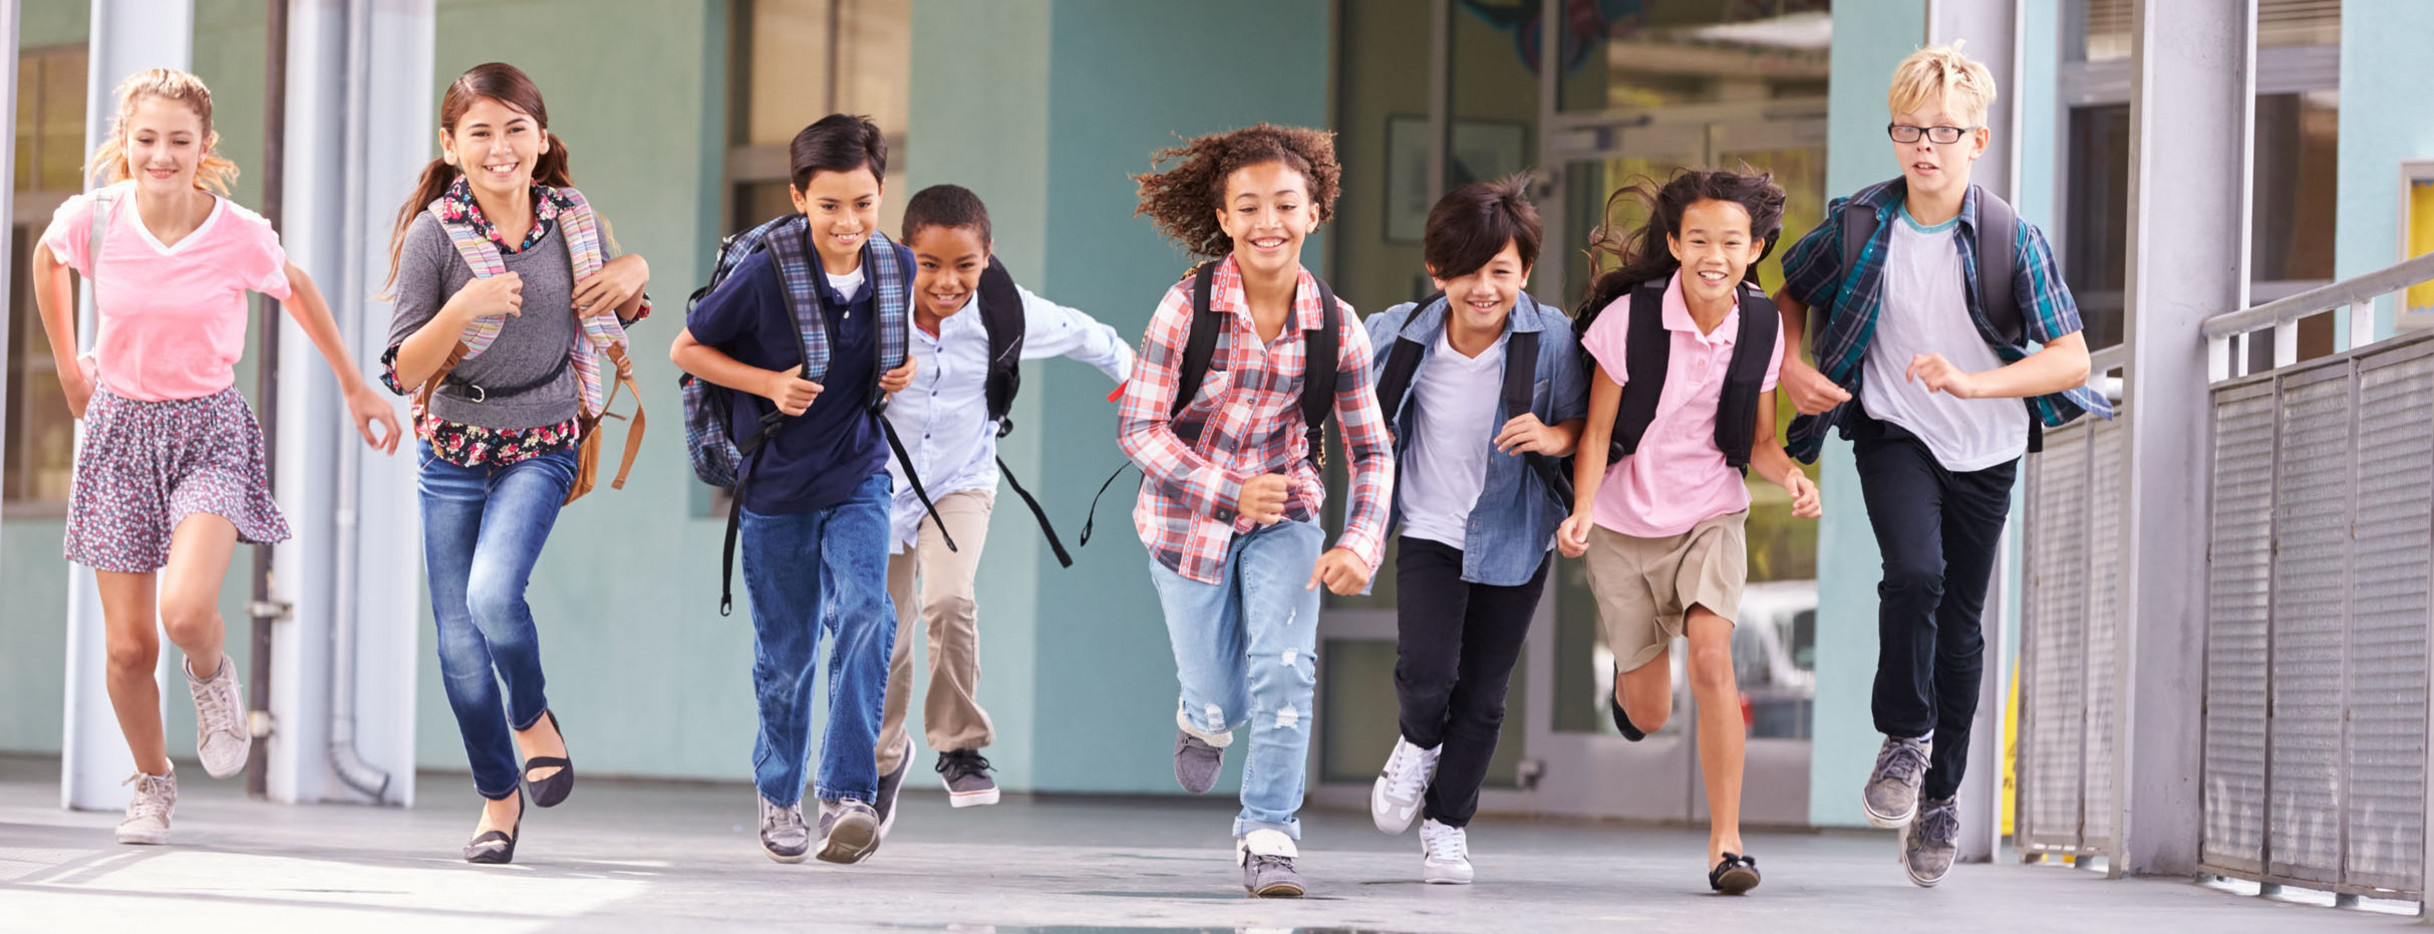 Kinder rennen durch den Flur einer Schule